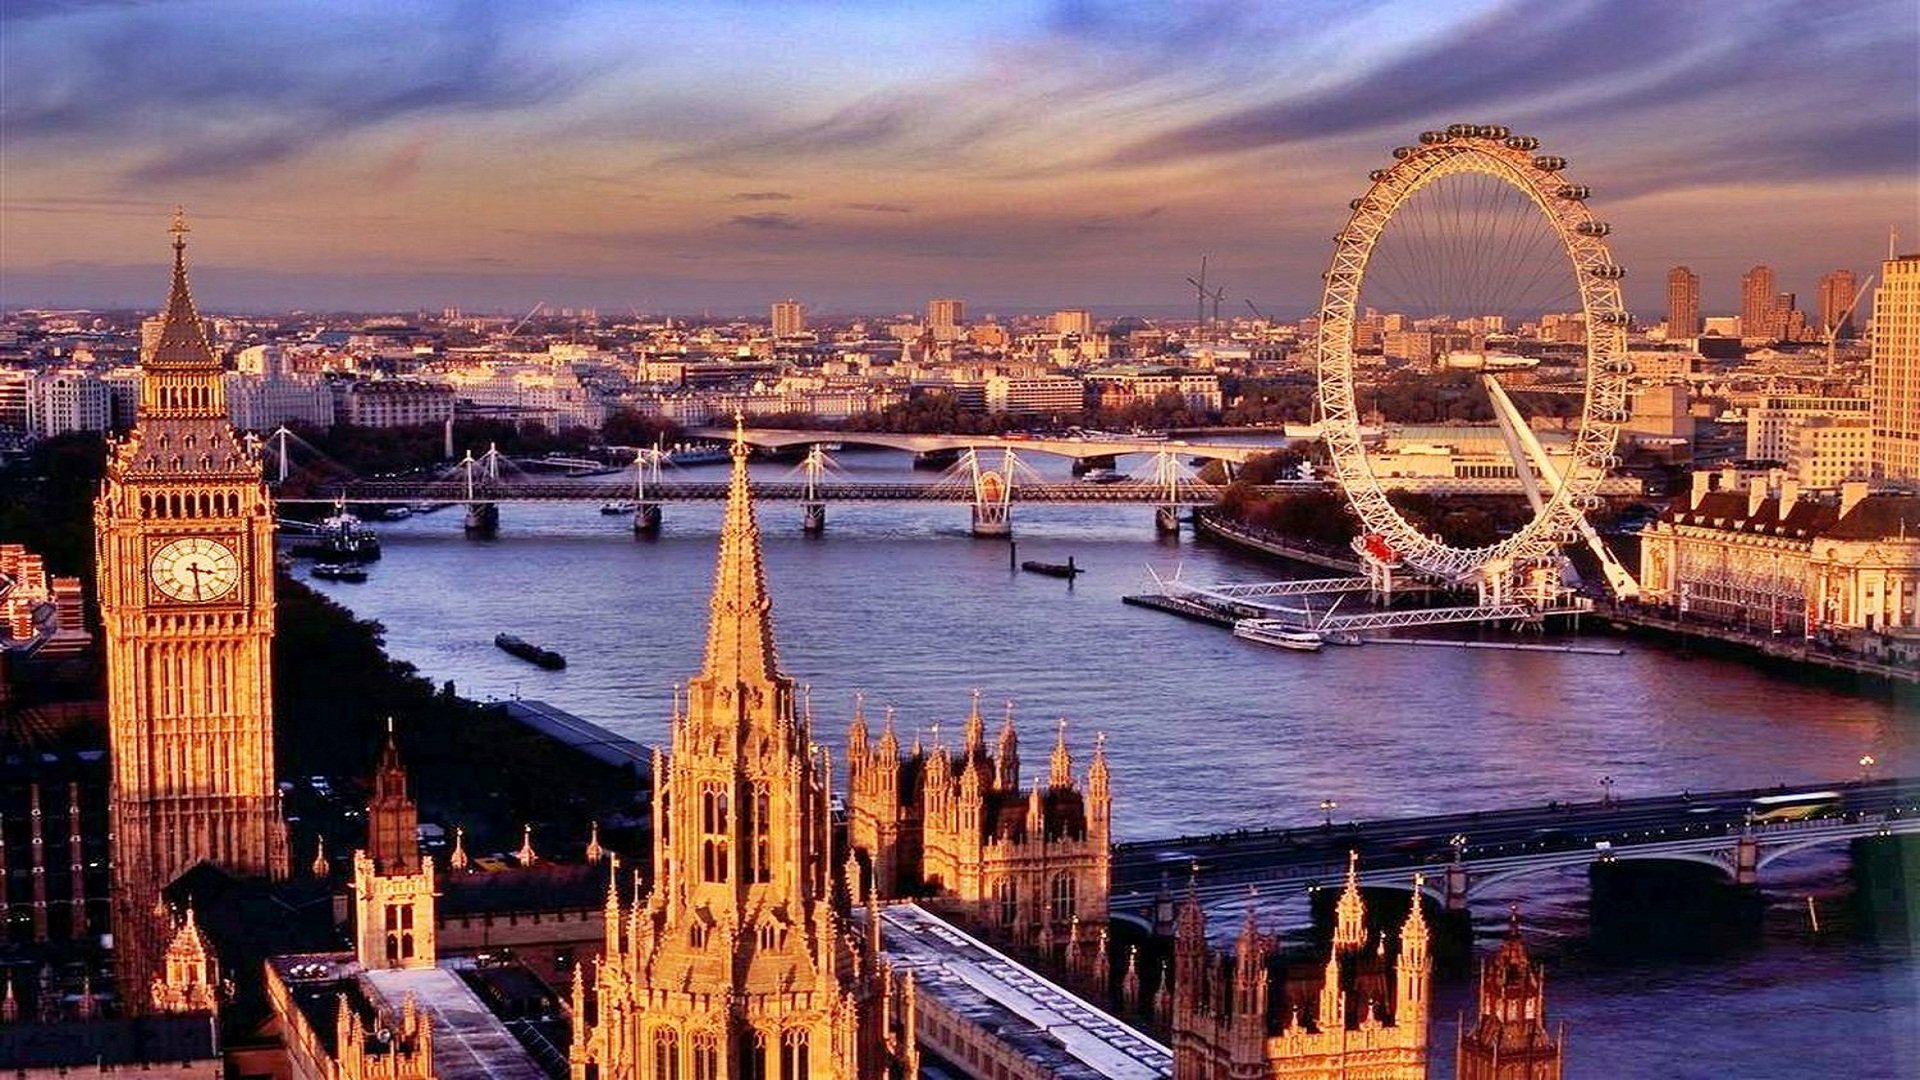 2 столицы великобритании. Лондон столица Англии. Столица Англии Биг Бен. 4. Темза, Лондон, Великобритания. Достопримечательности Англии Биг Бен.